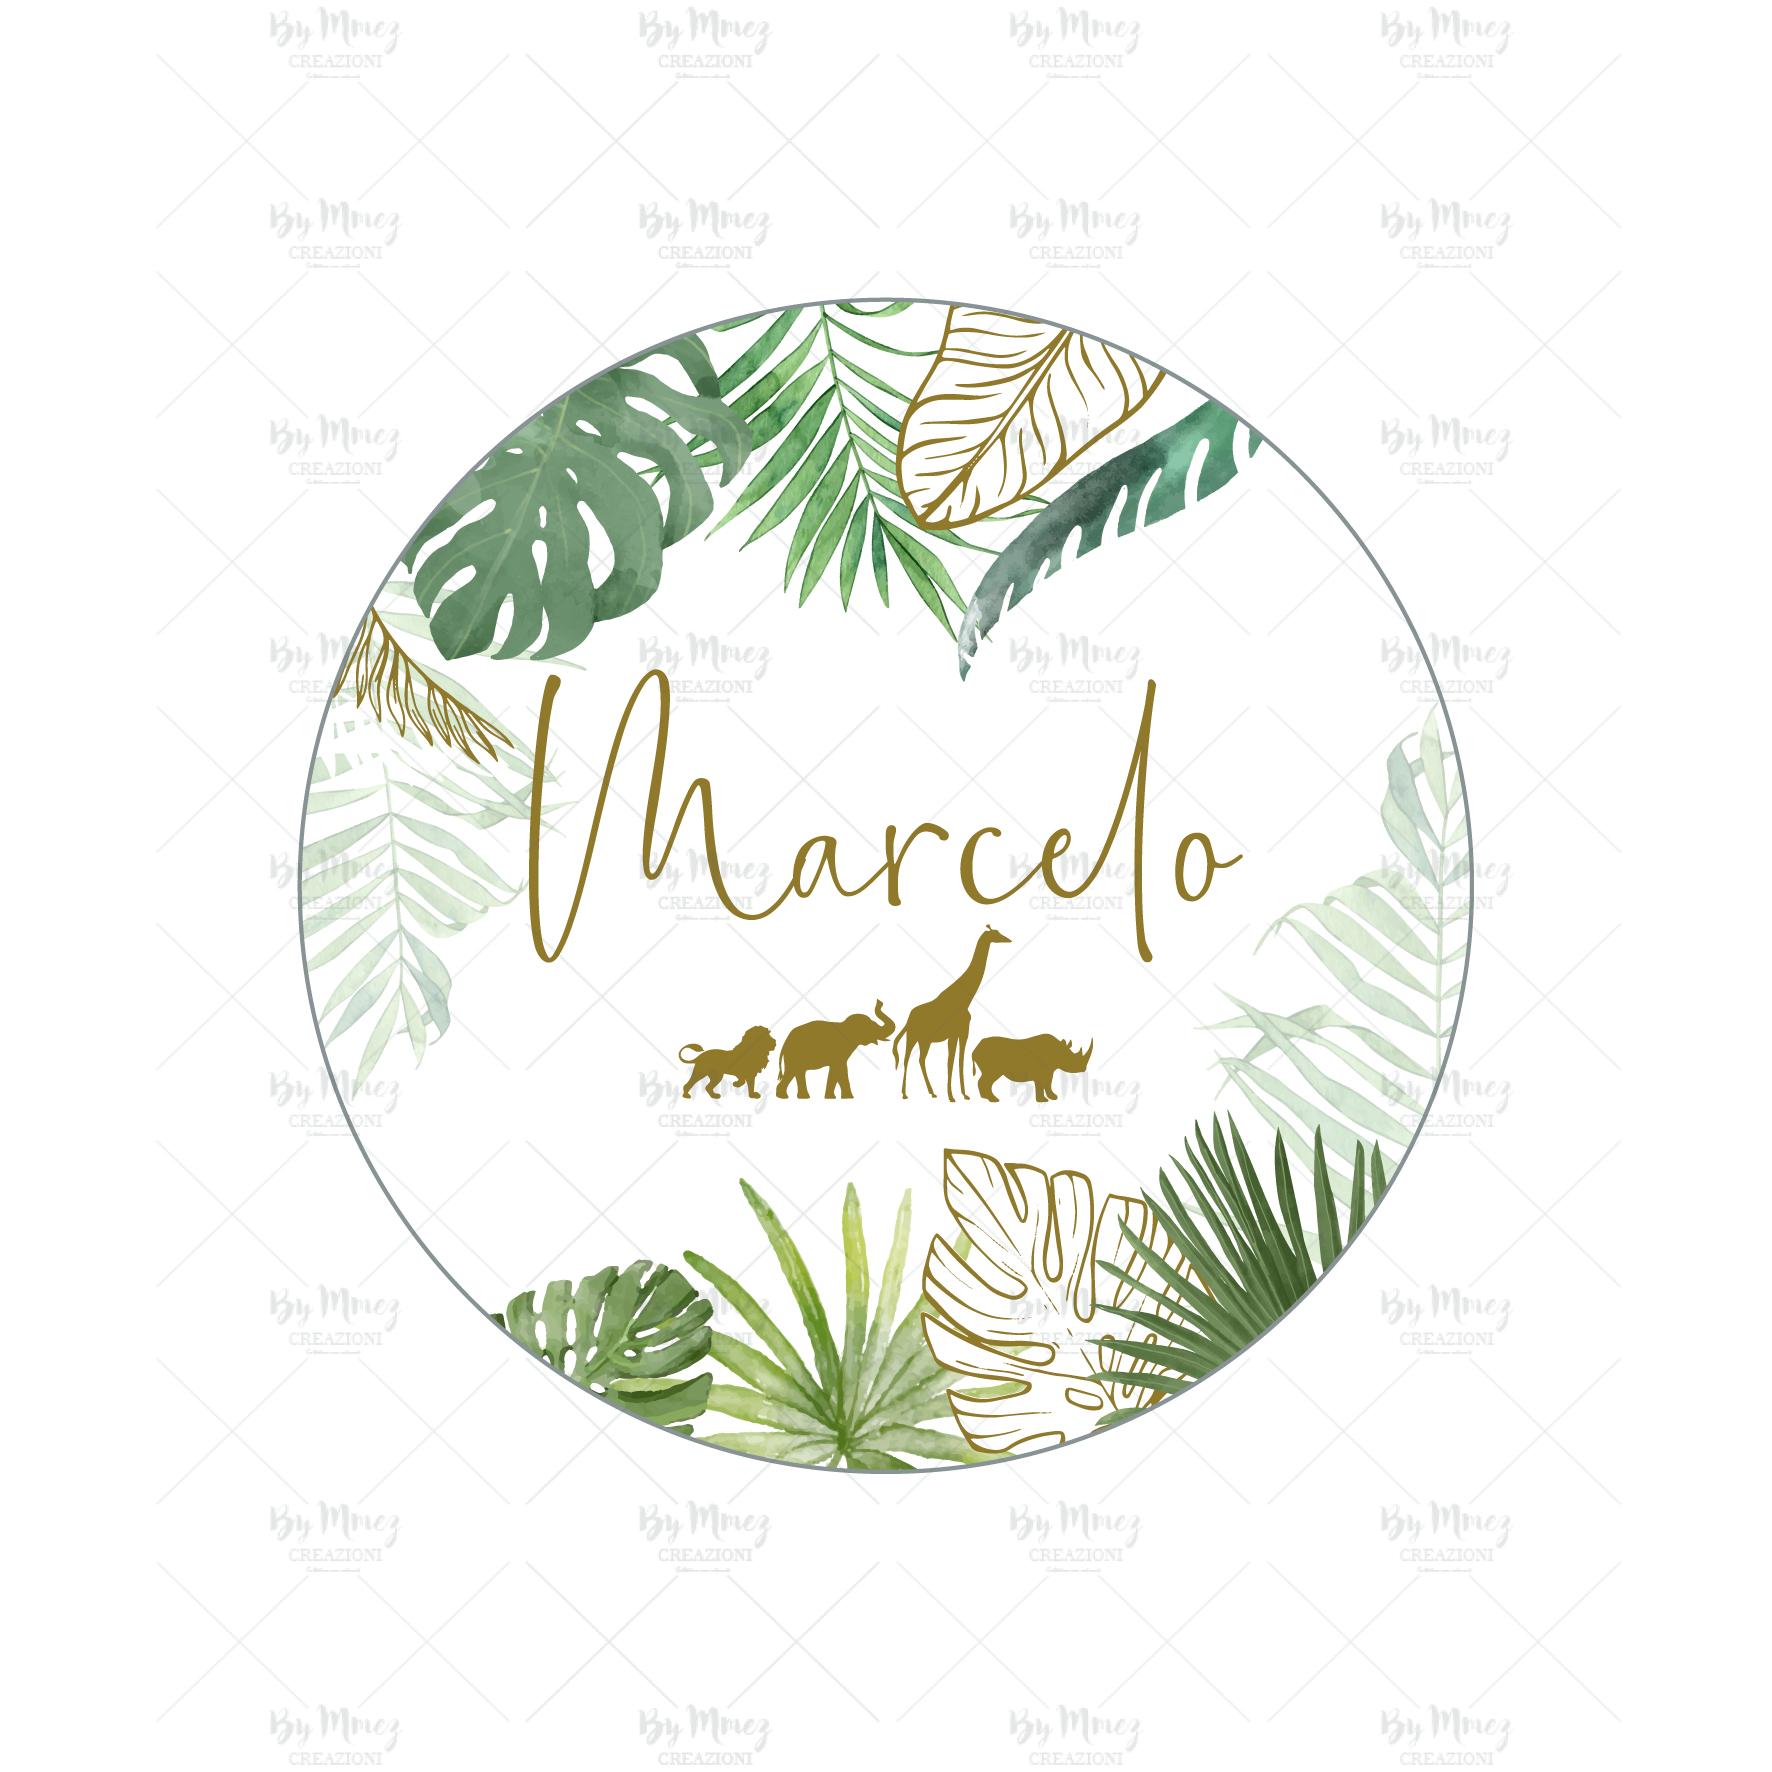 Étiquette autocollante / Stickers - Thème Jungle Tropical Chic